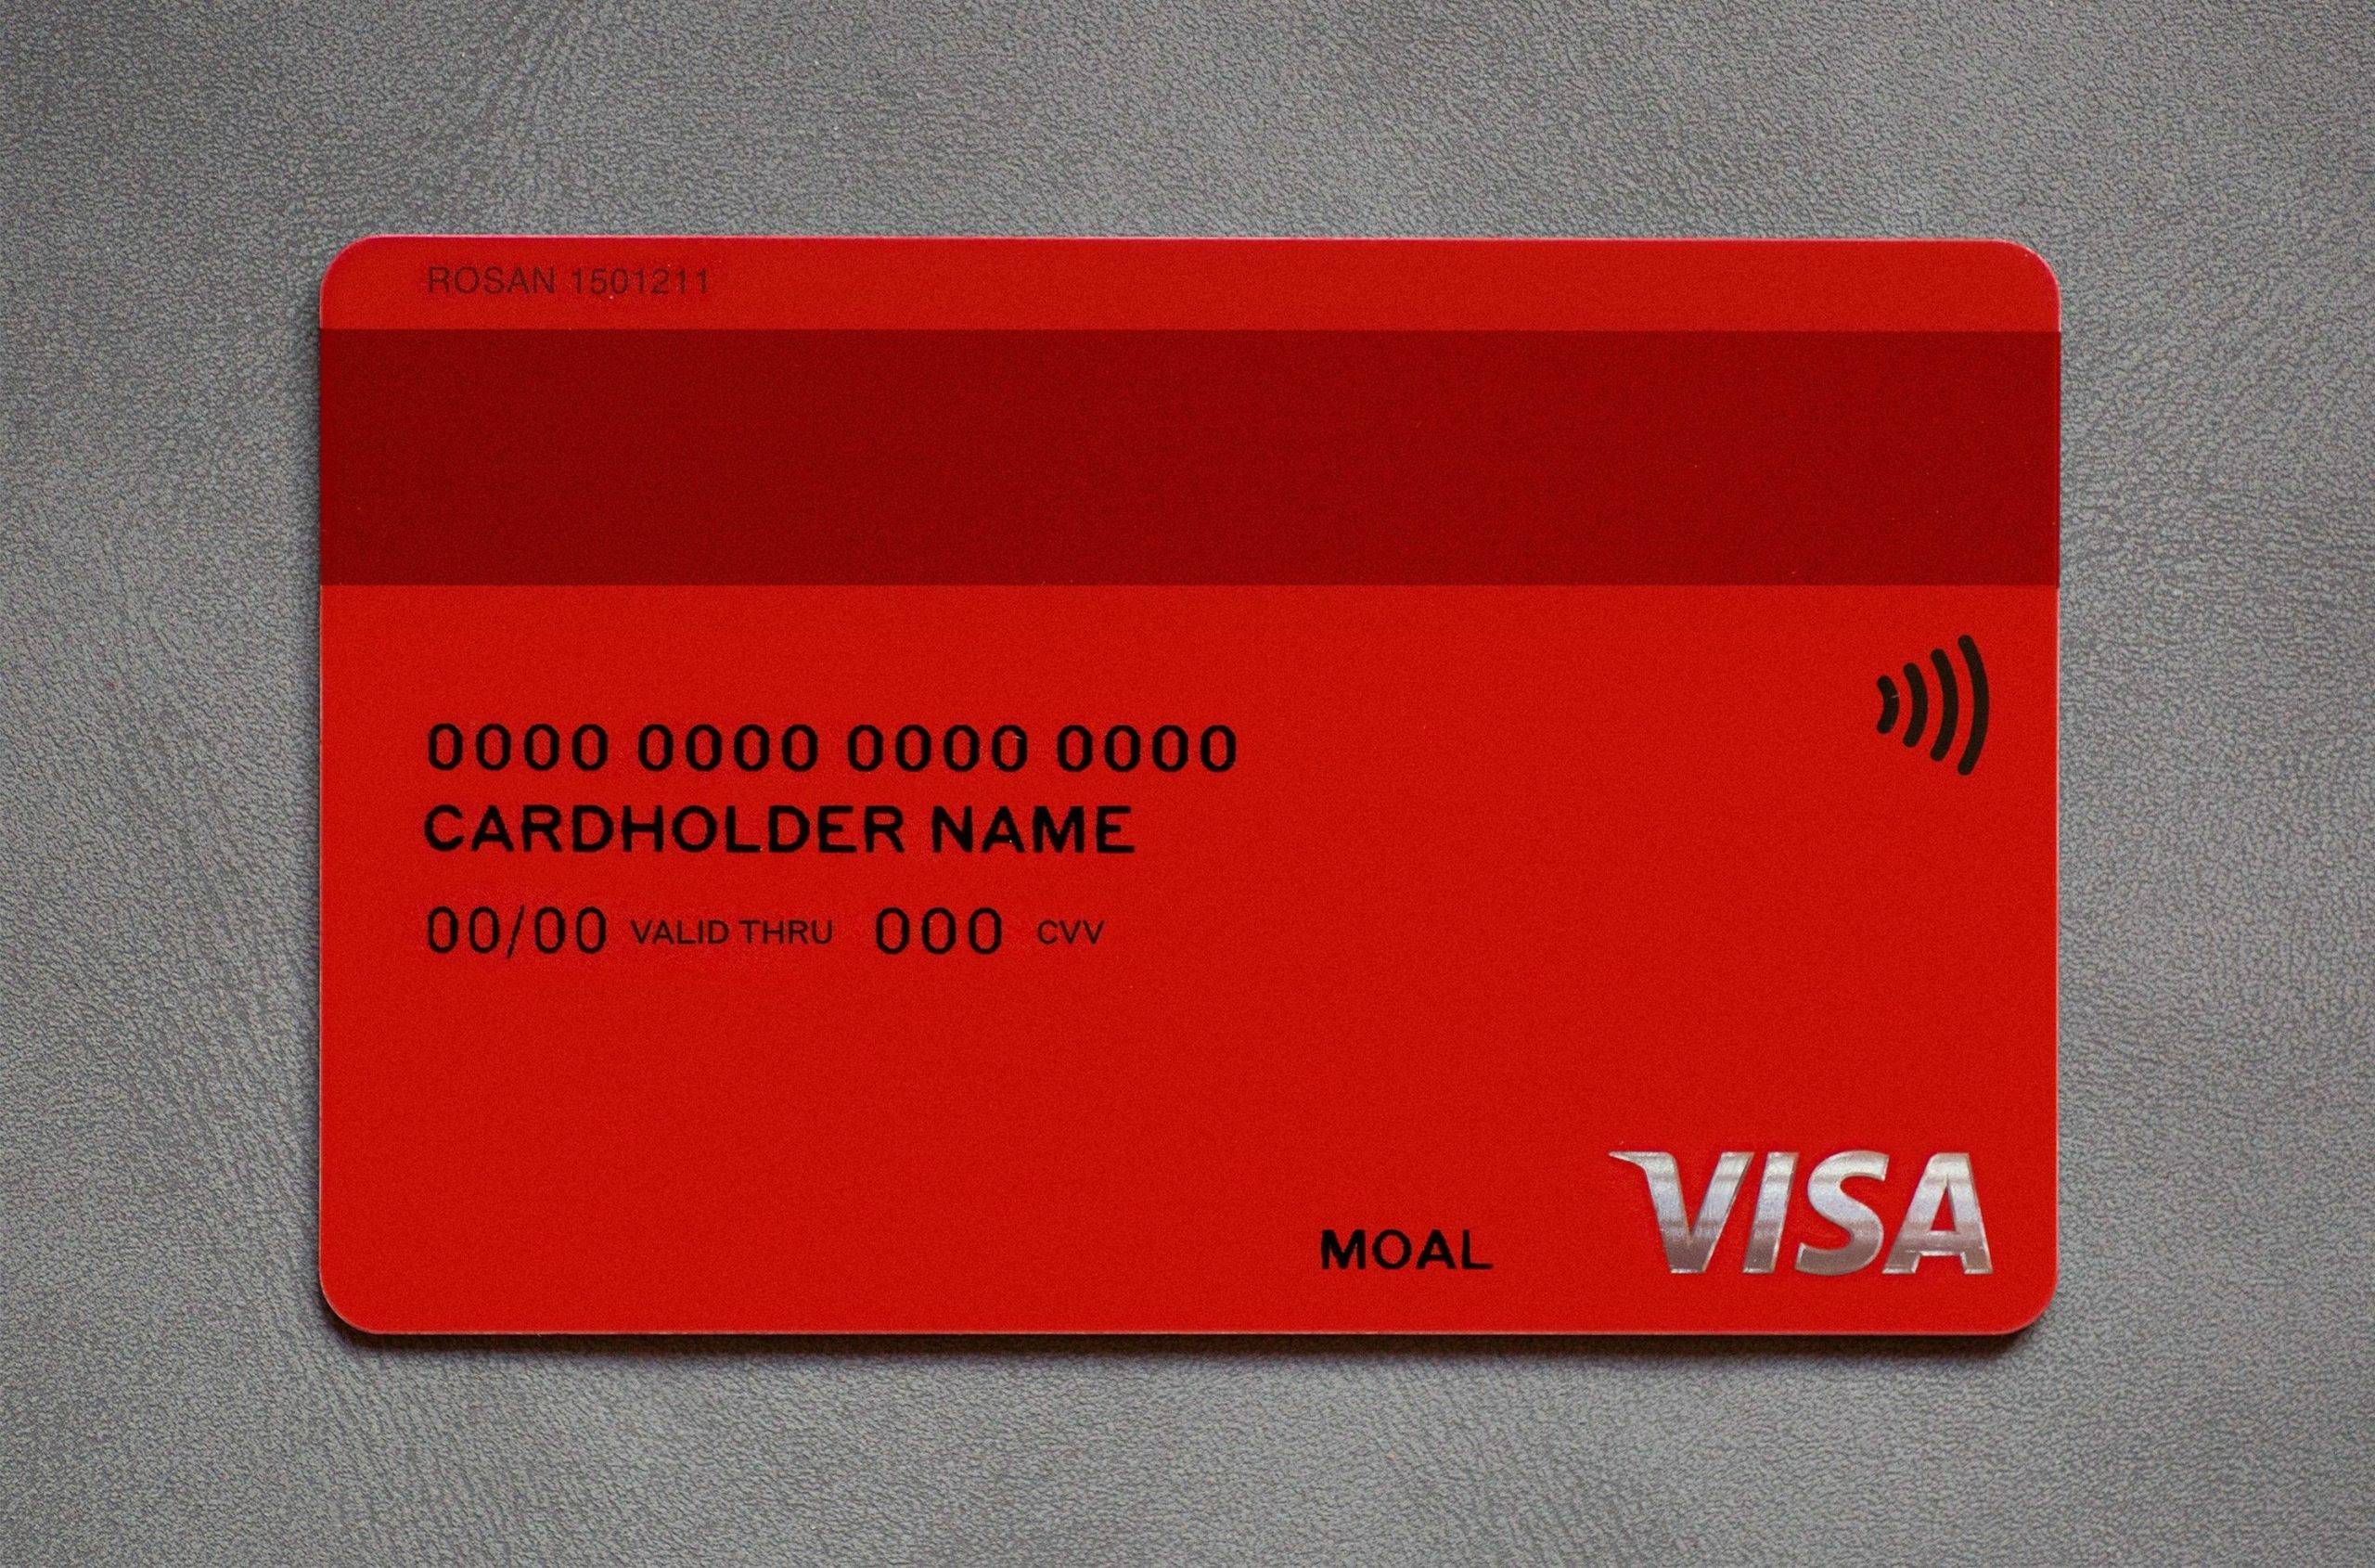 Альф банк кредитная карта fast card